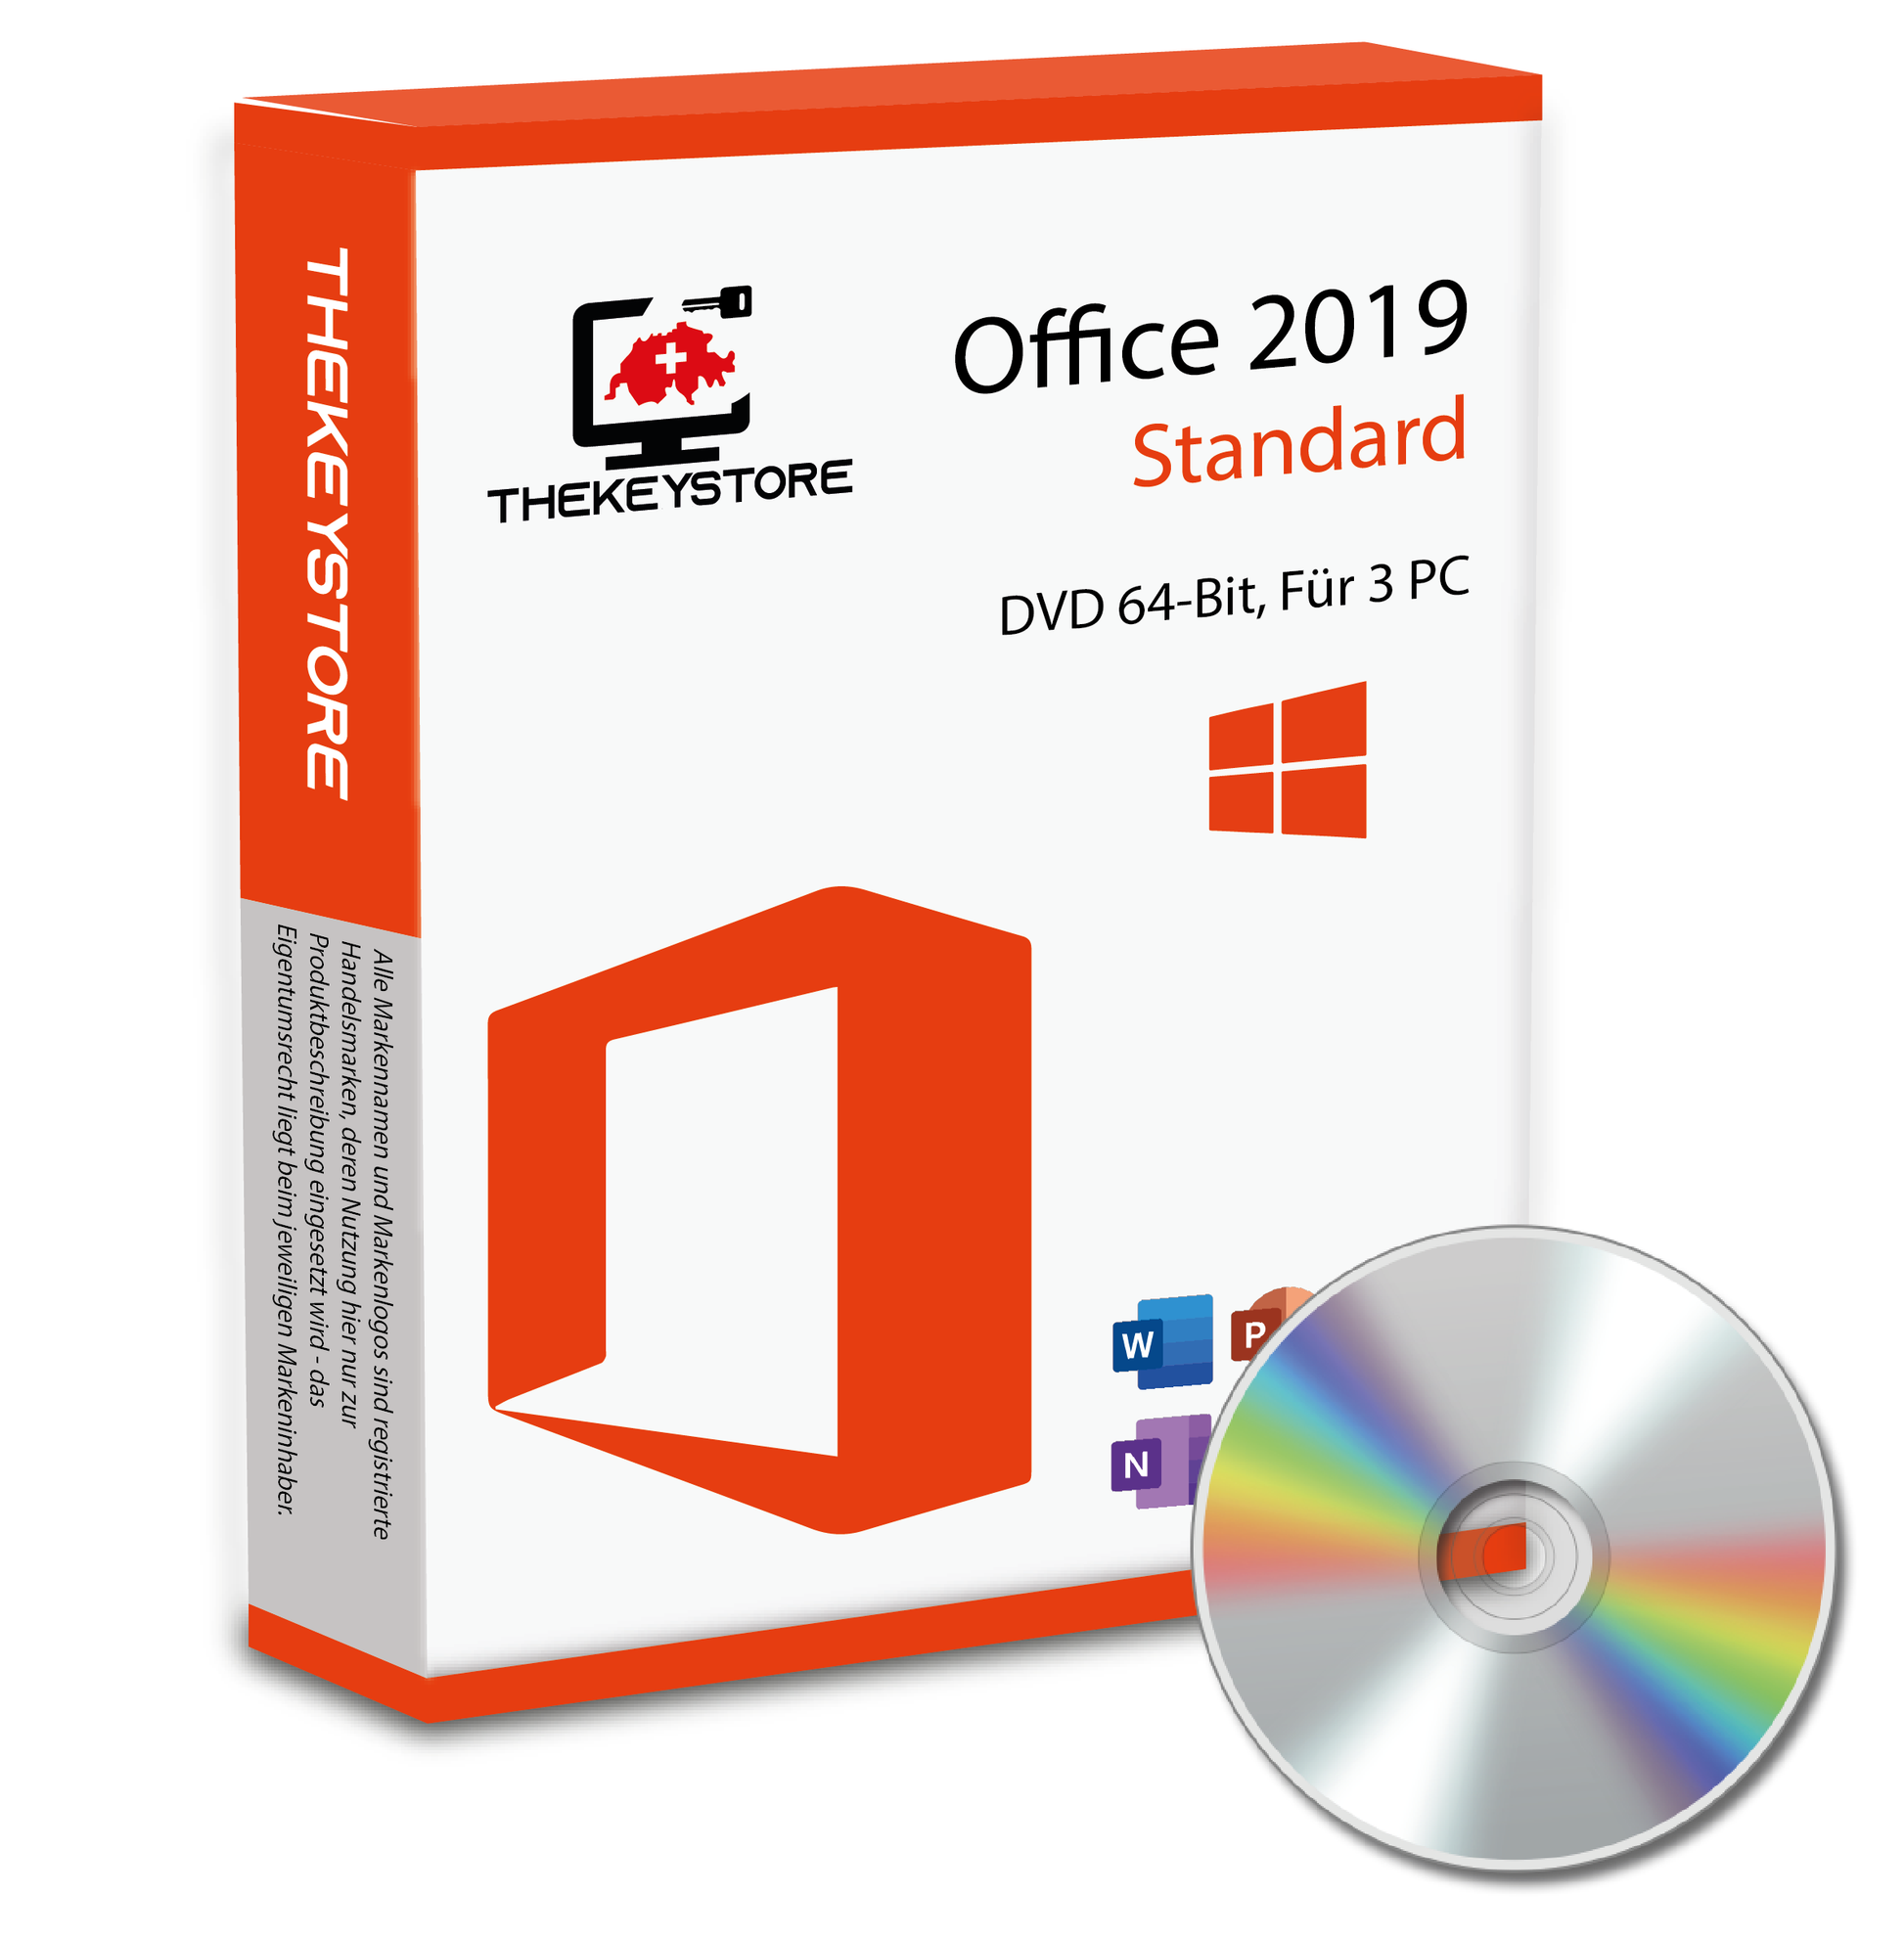 Microsoft Office 2019 Standard - Für 3 PC - TheKeyStore Schweiz